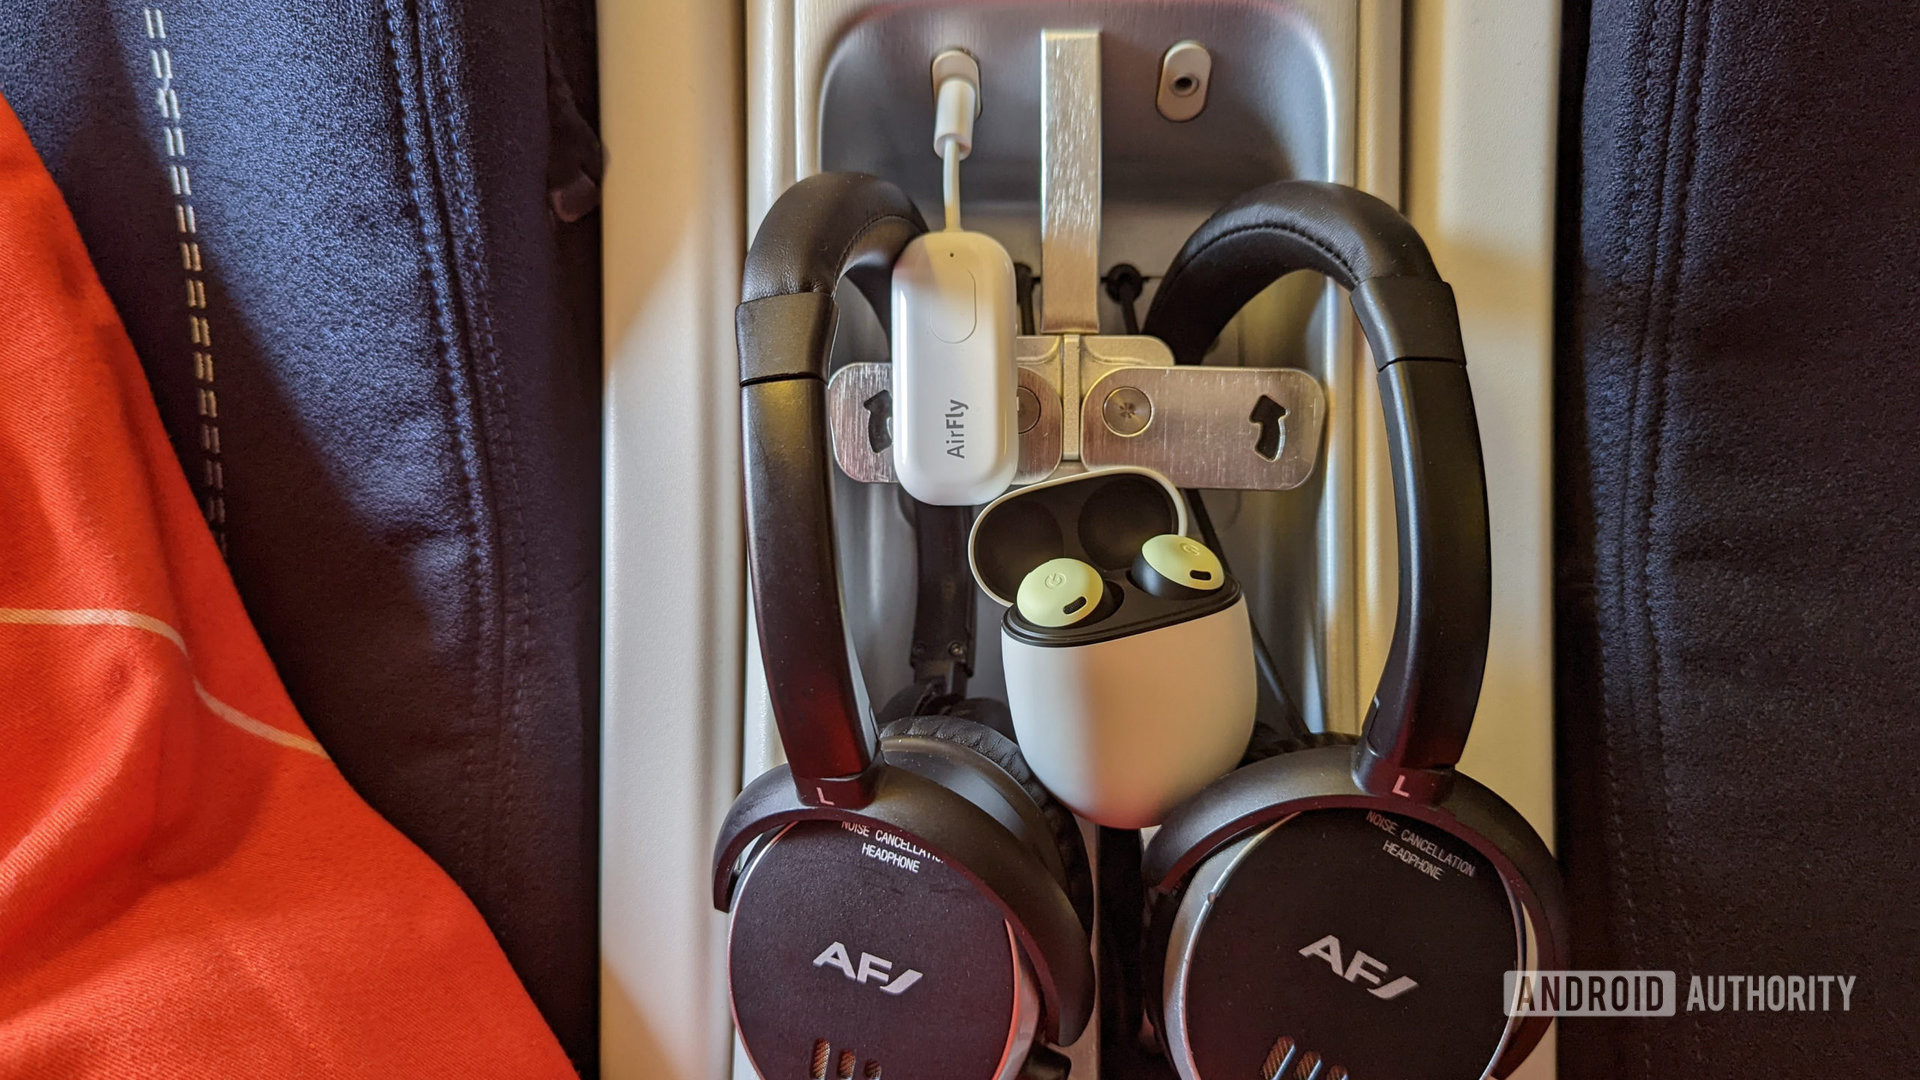 Airfly Pro dicolokkan ke konsol penumpang pesawat Air France dengan Google Pixel Buds Pro dan headphone Air France